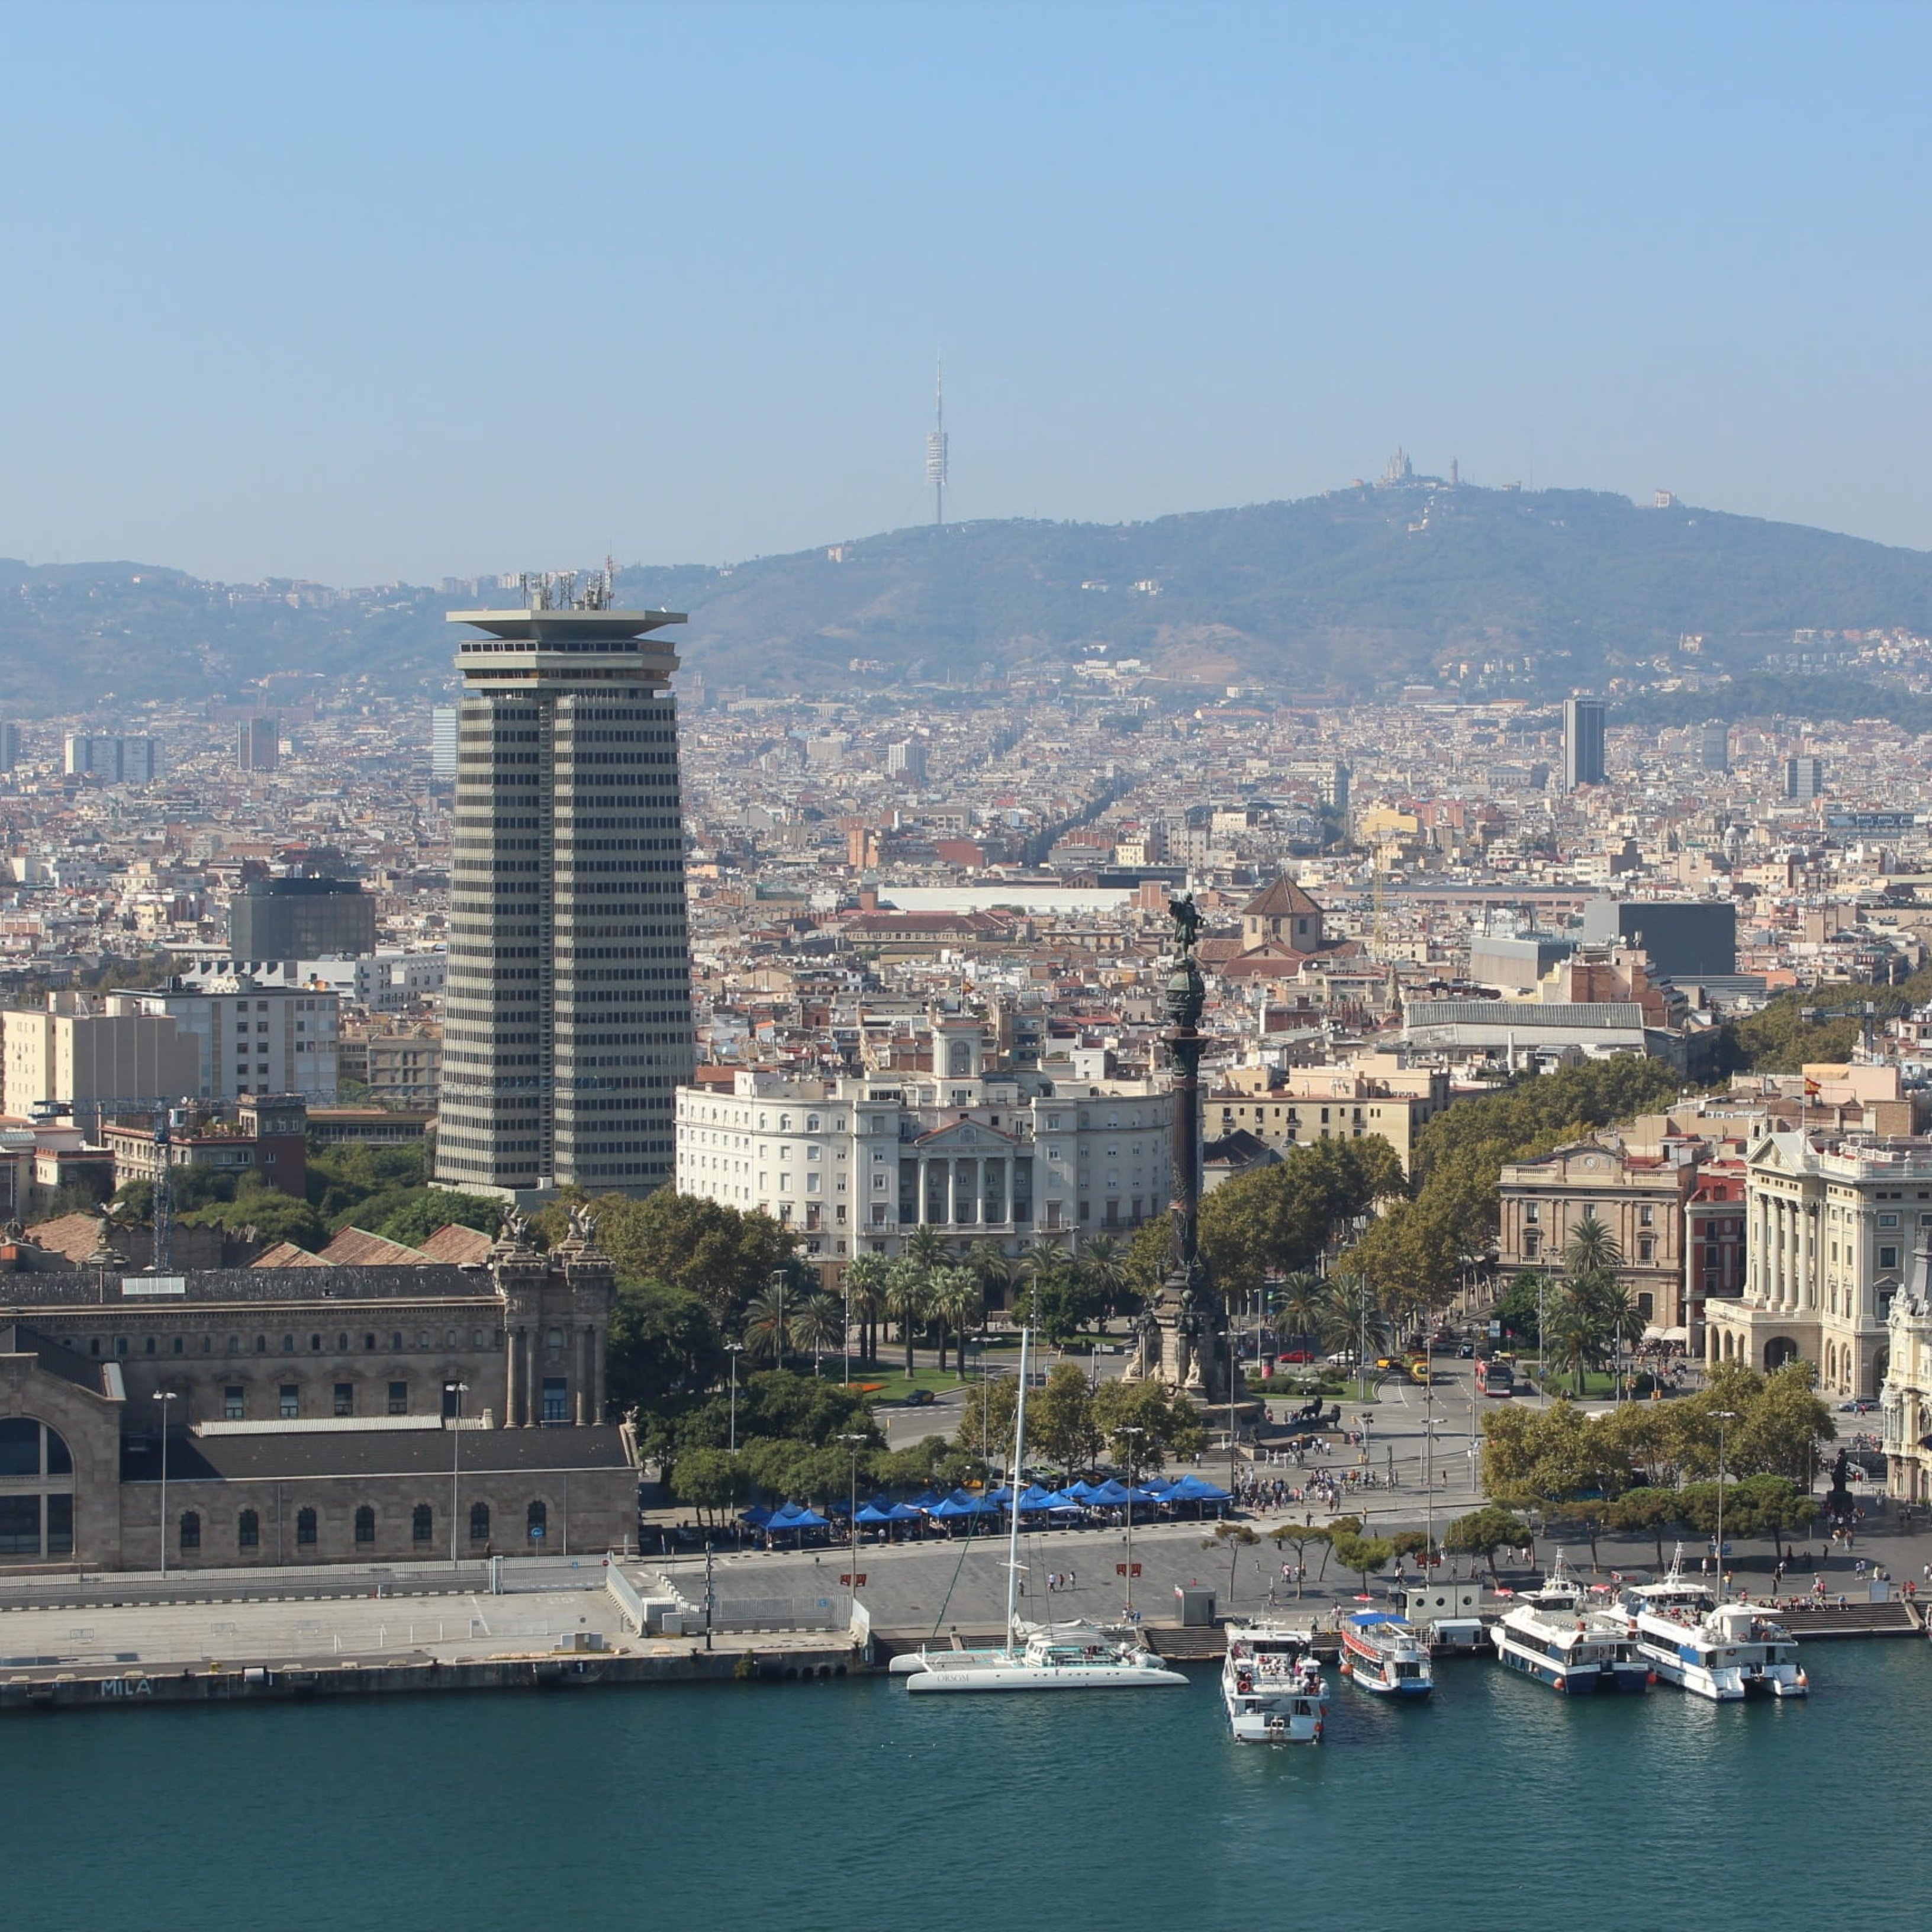 Barcelona será Capital Mundial de la Arquitectura el año 2026